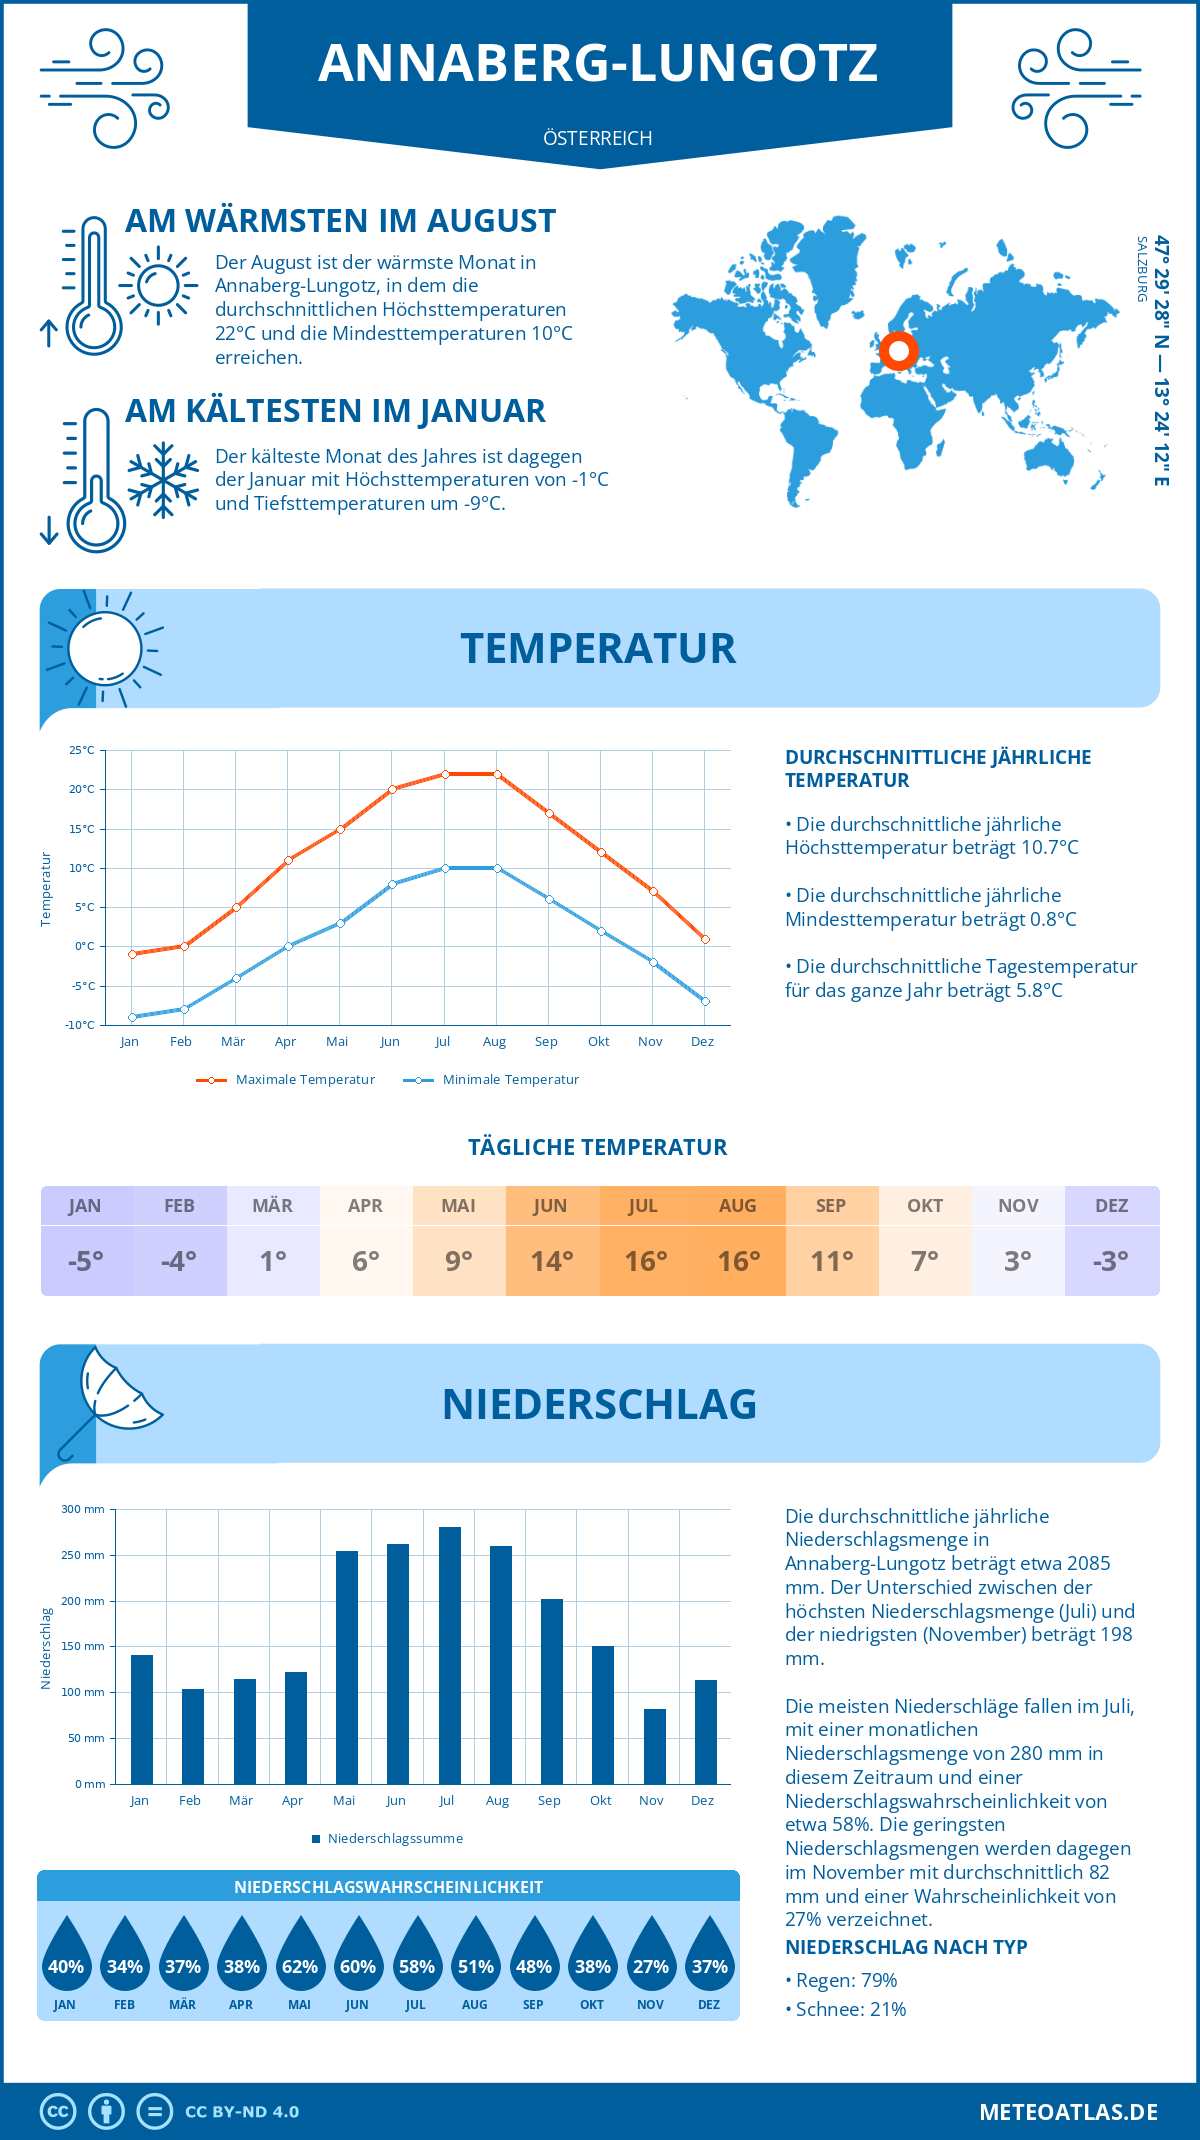 Wetter Annaberg-Lungotz (Österreich) - Temperatur und Niederschlag